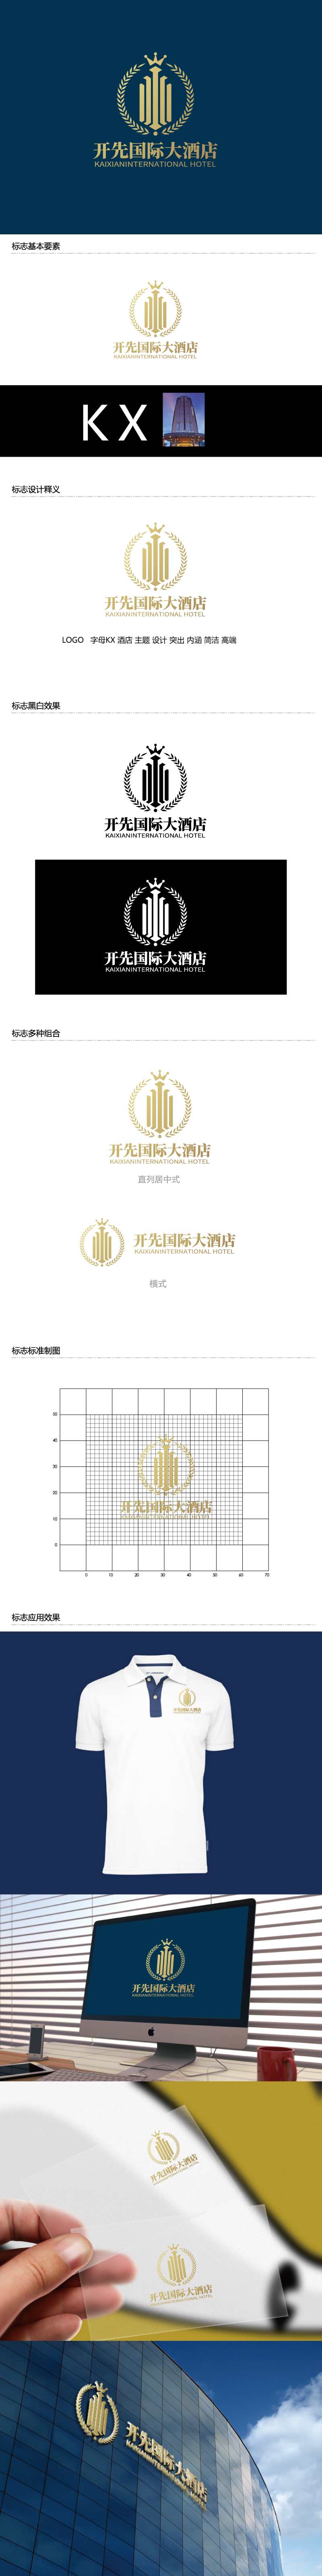 张俊的开先国际大酒店logo设计